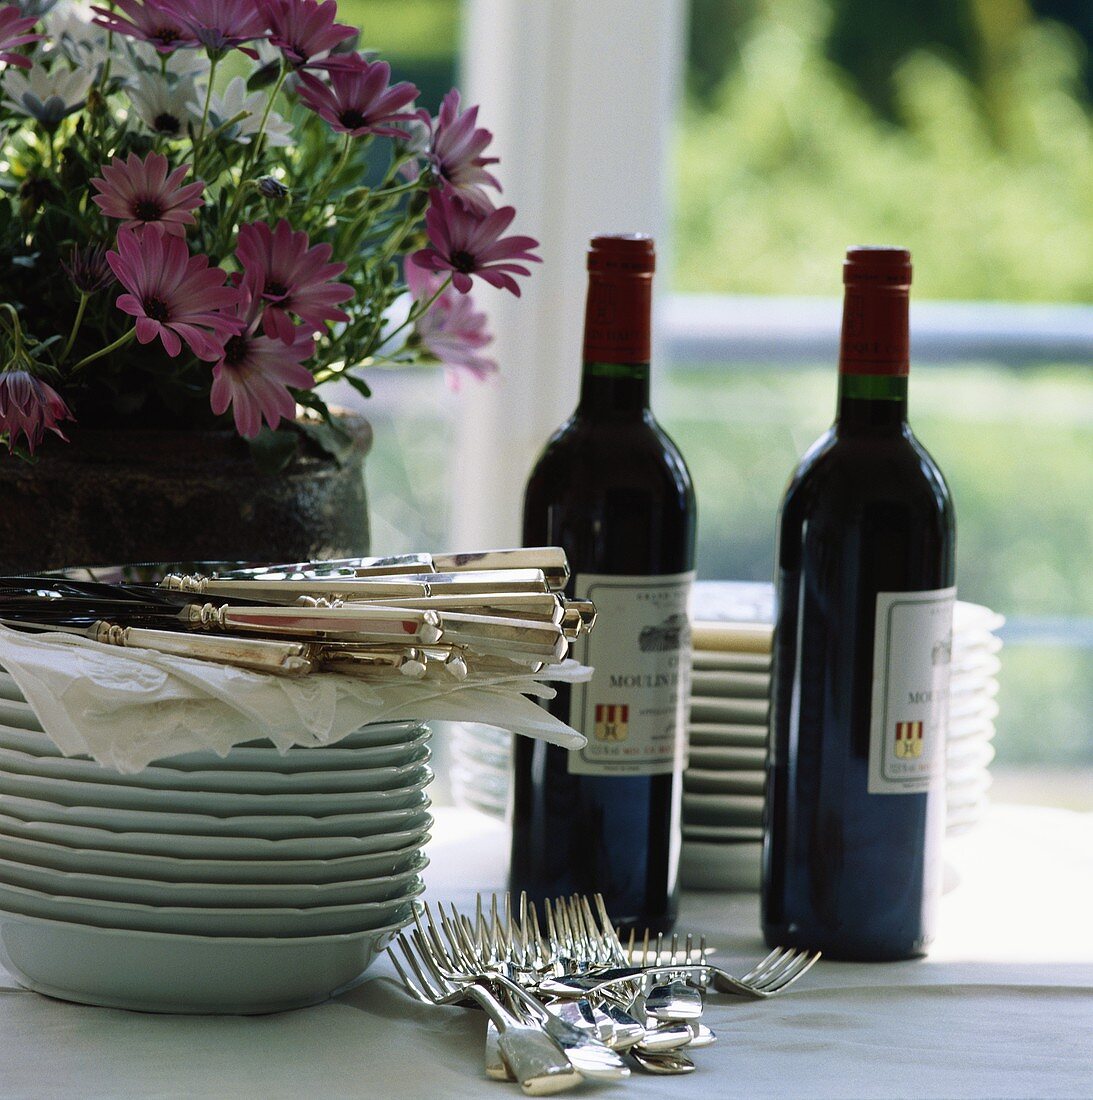 Tellerstapel, Besteck, Rotwein und Blumen auf Tisch